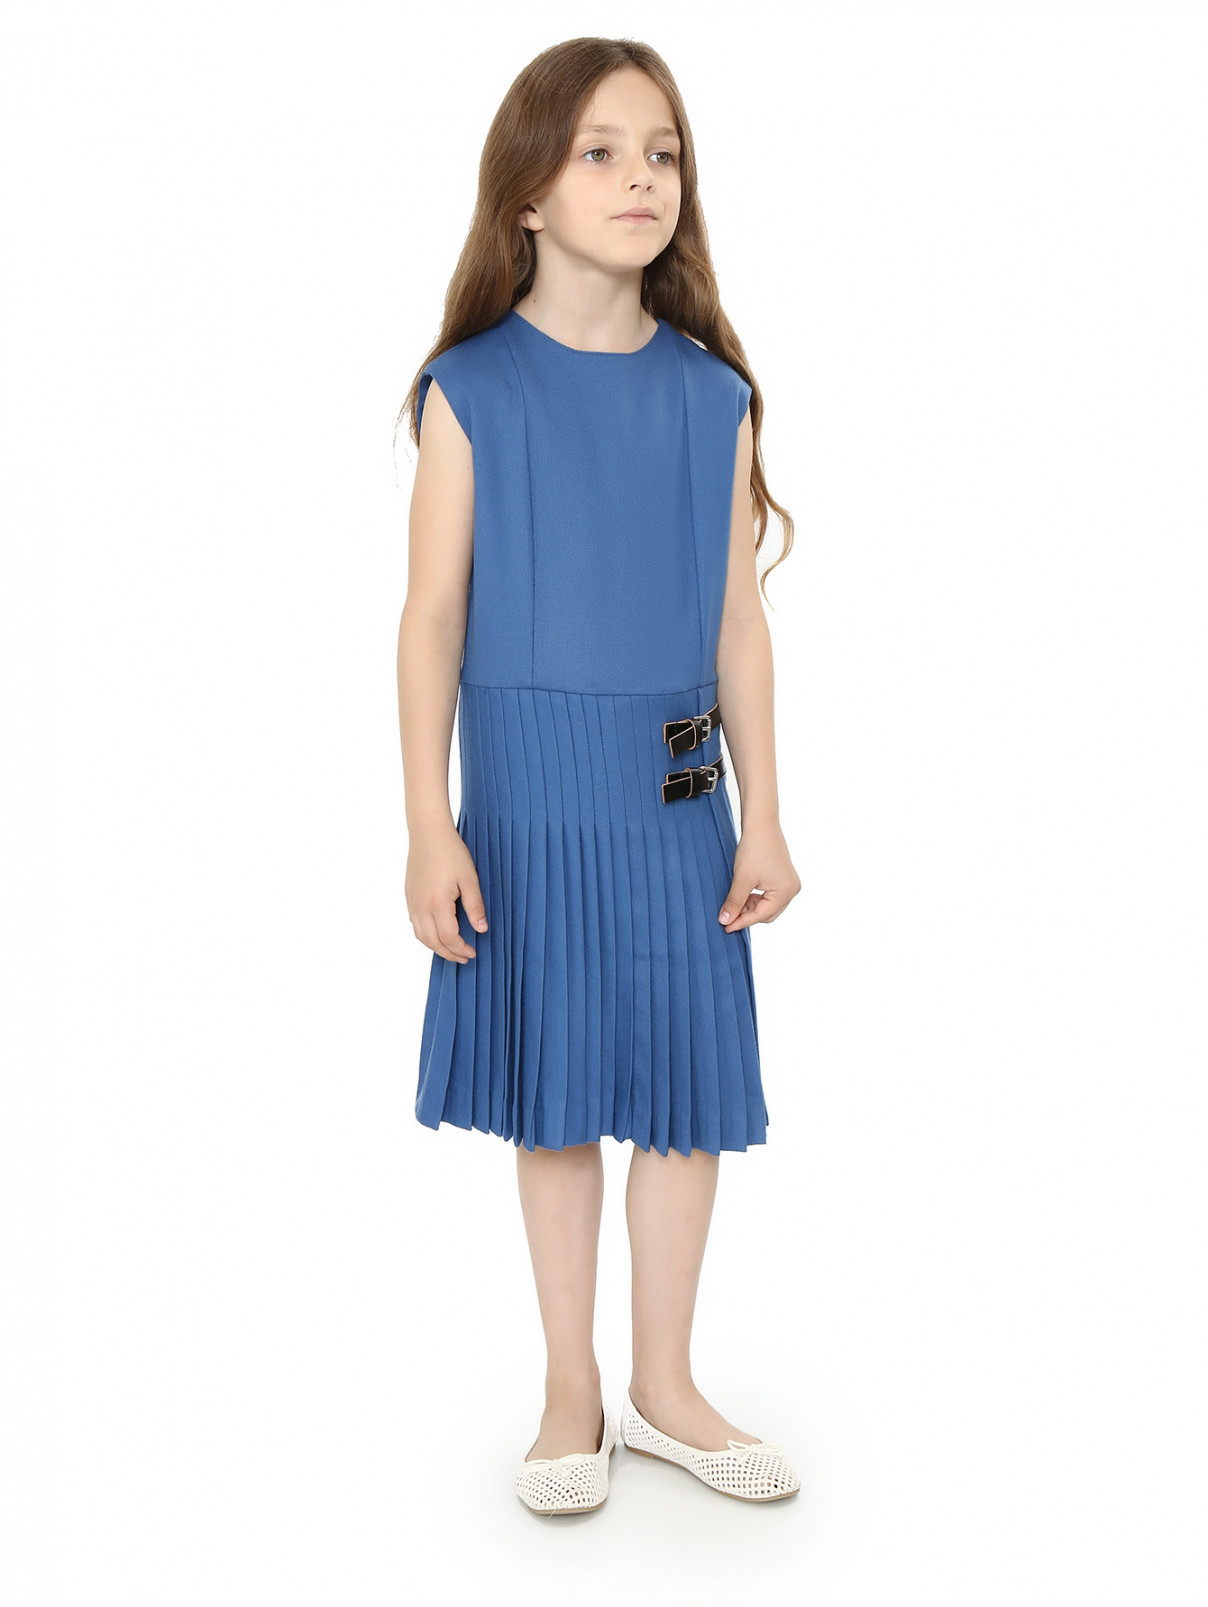 Платье из хлопка прямого фасона без рукавов Marni  –  Модель Общий вид  – Цвет:  Синий